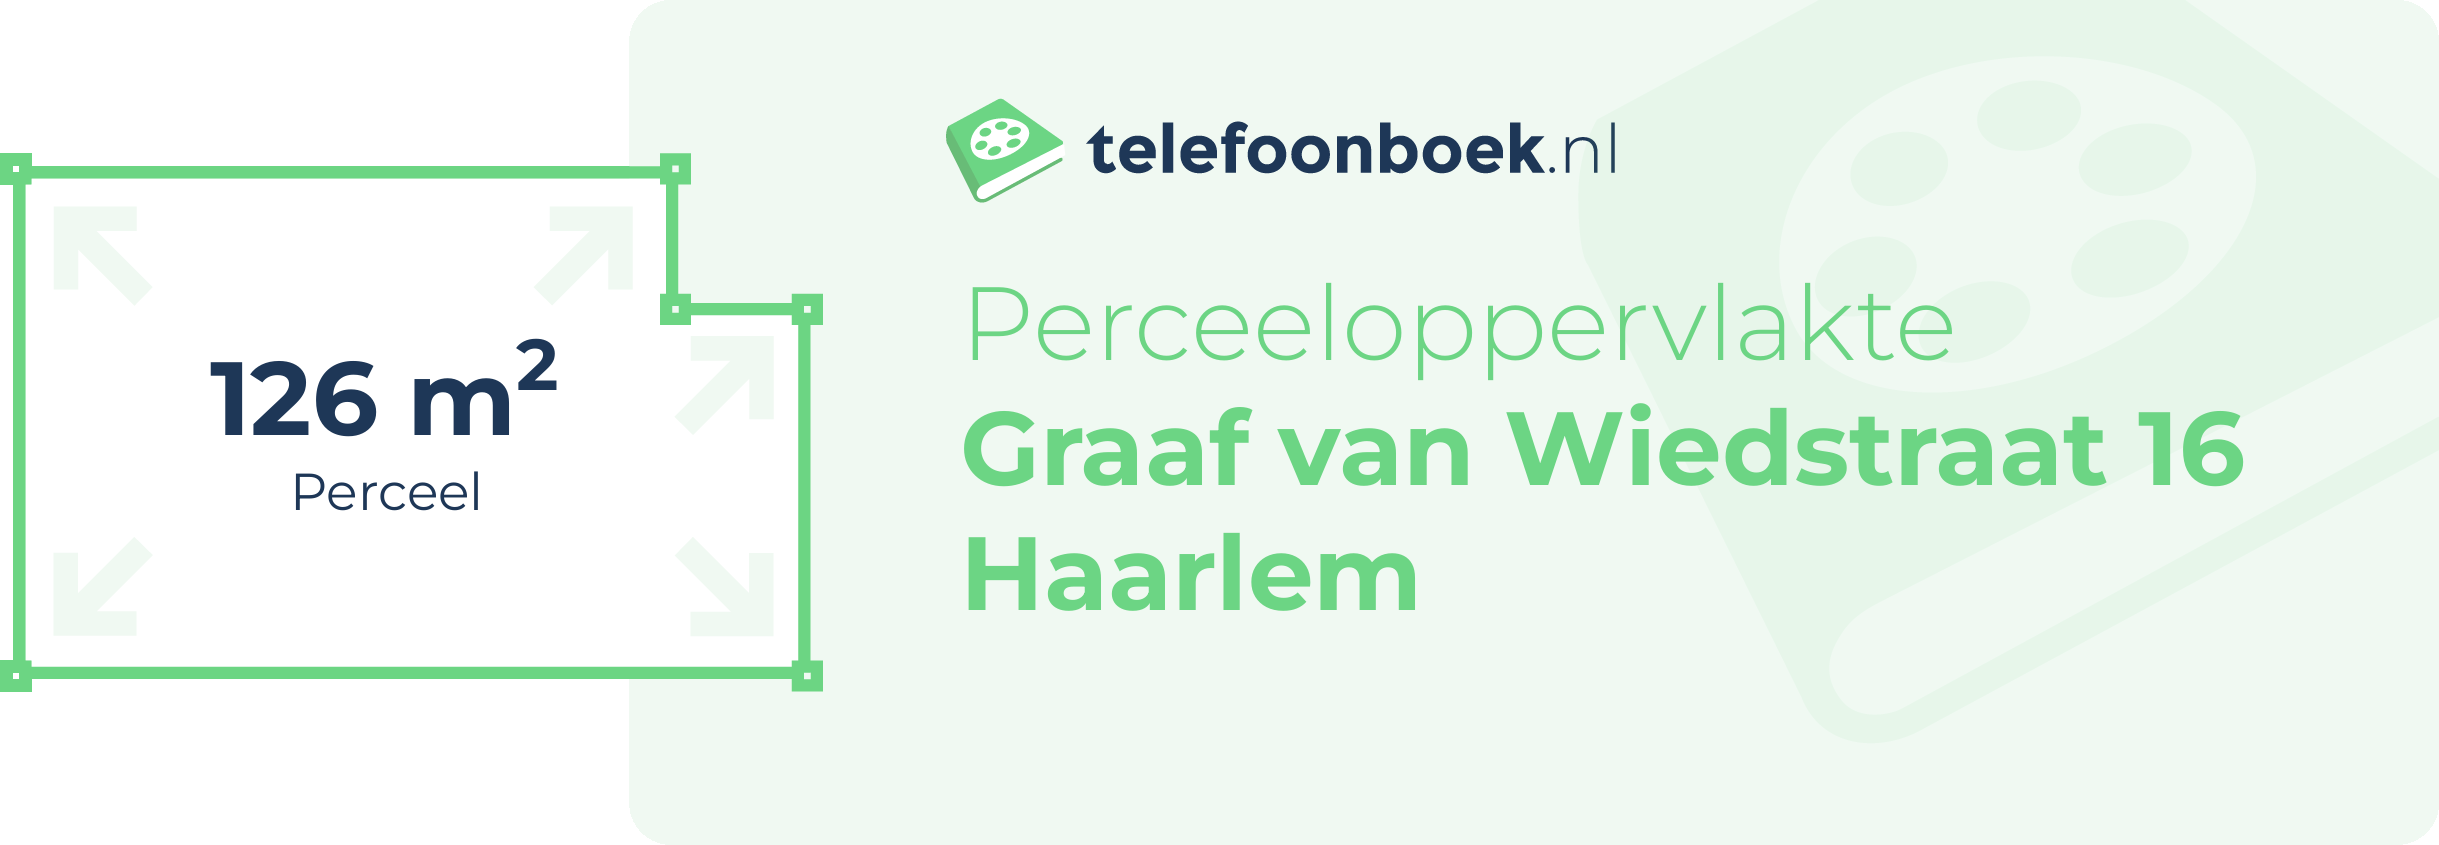 Perceeloppervlakte Graaf Van Wiedstraat 16 Haarlem